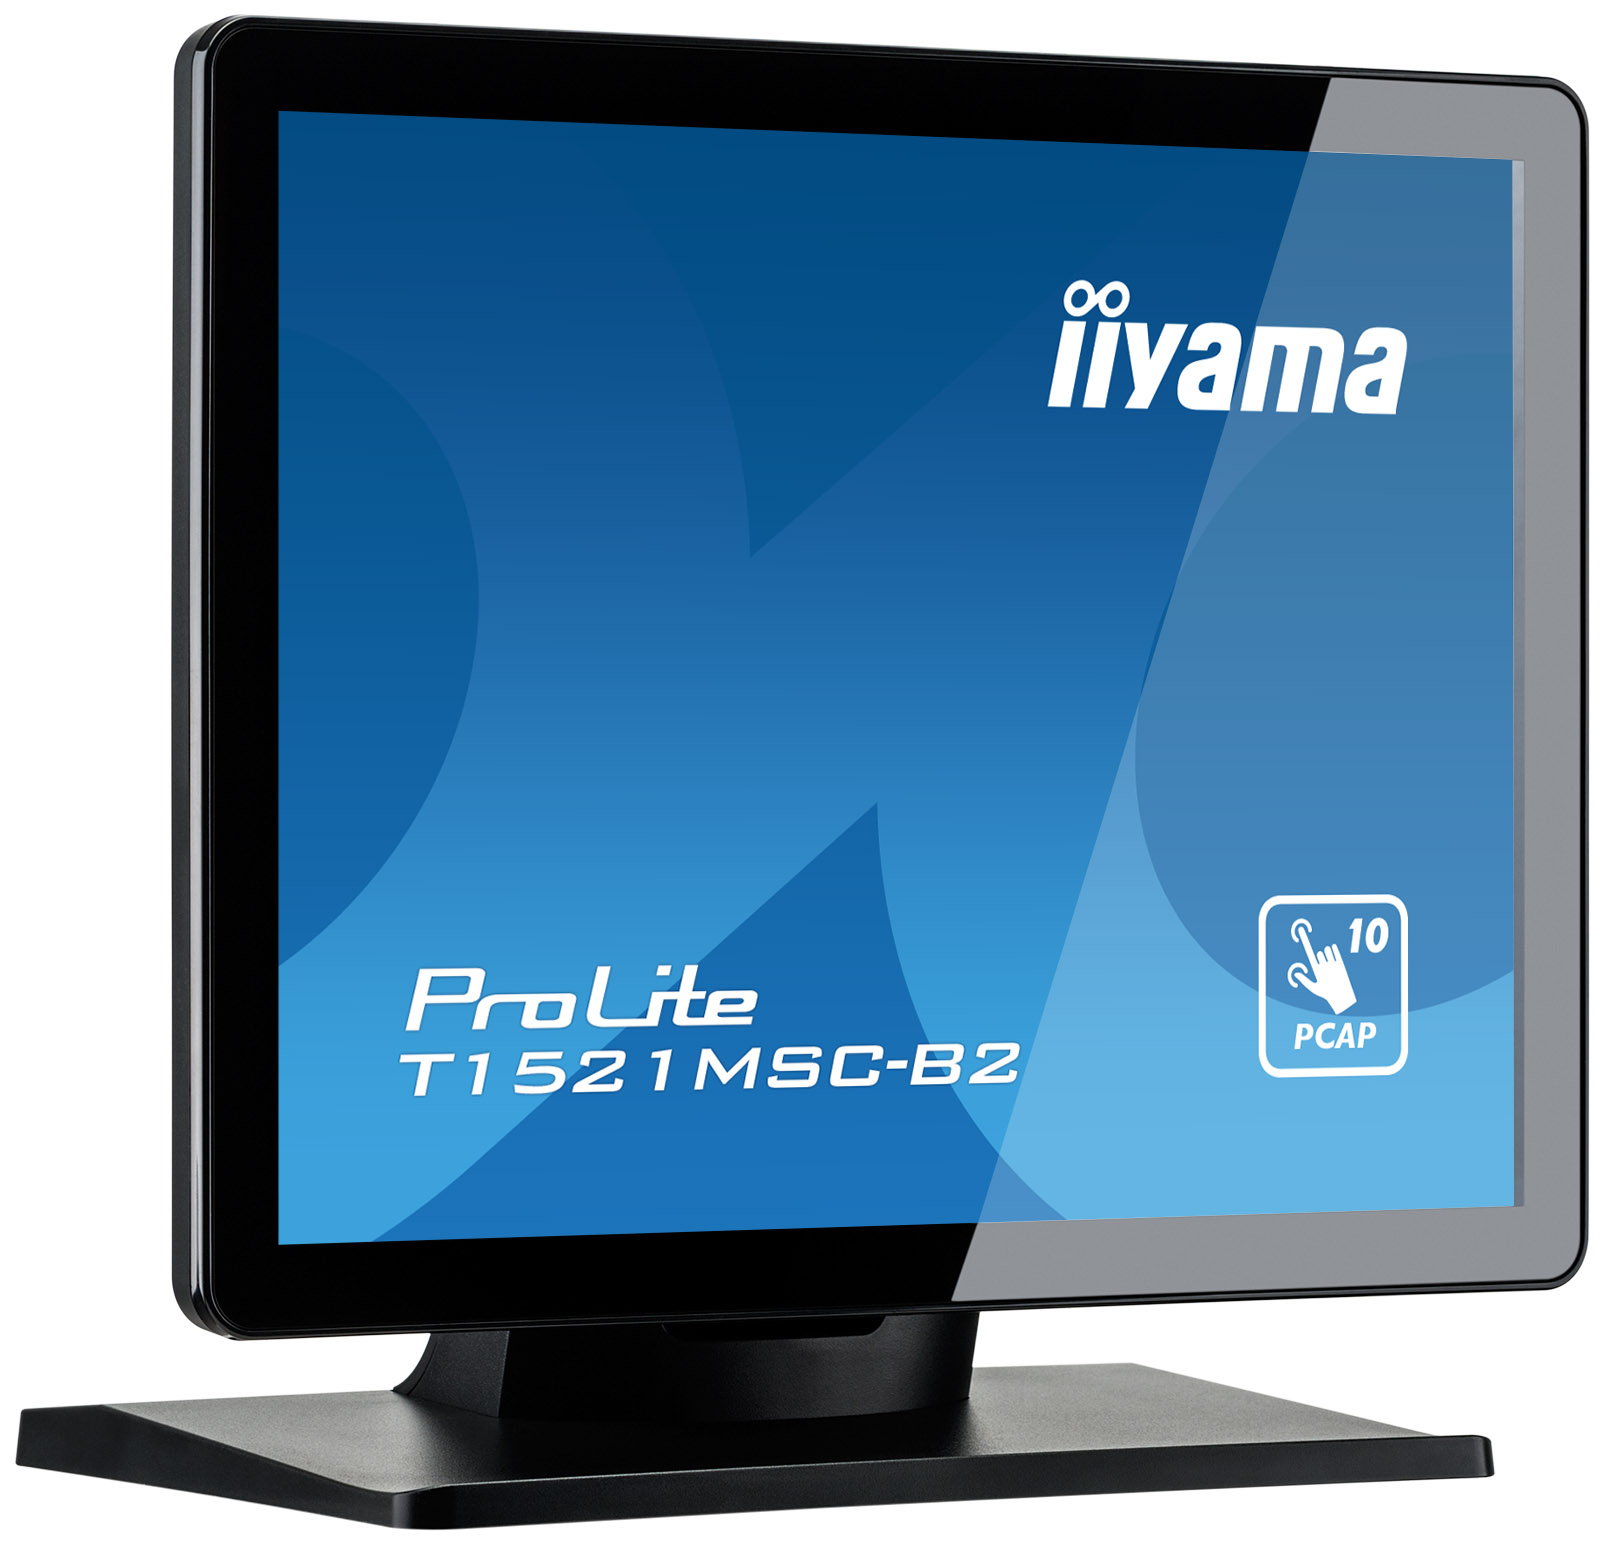 15" iiyama T1521MSC-B2:IPS, XGA, PCAP, HDMI 